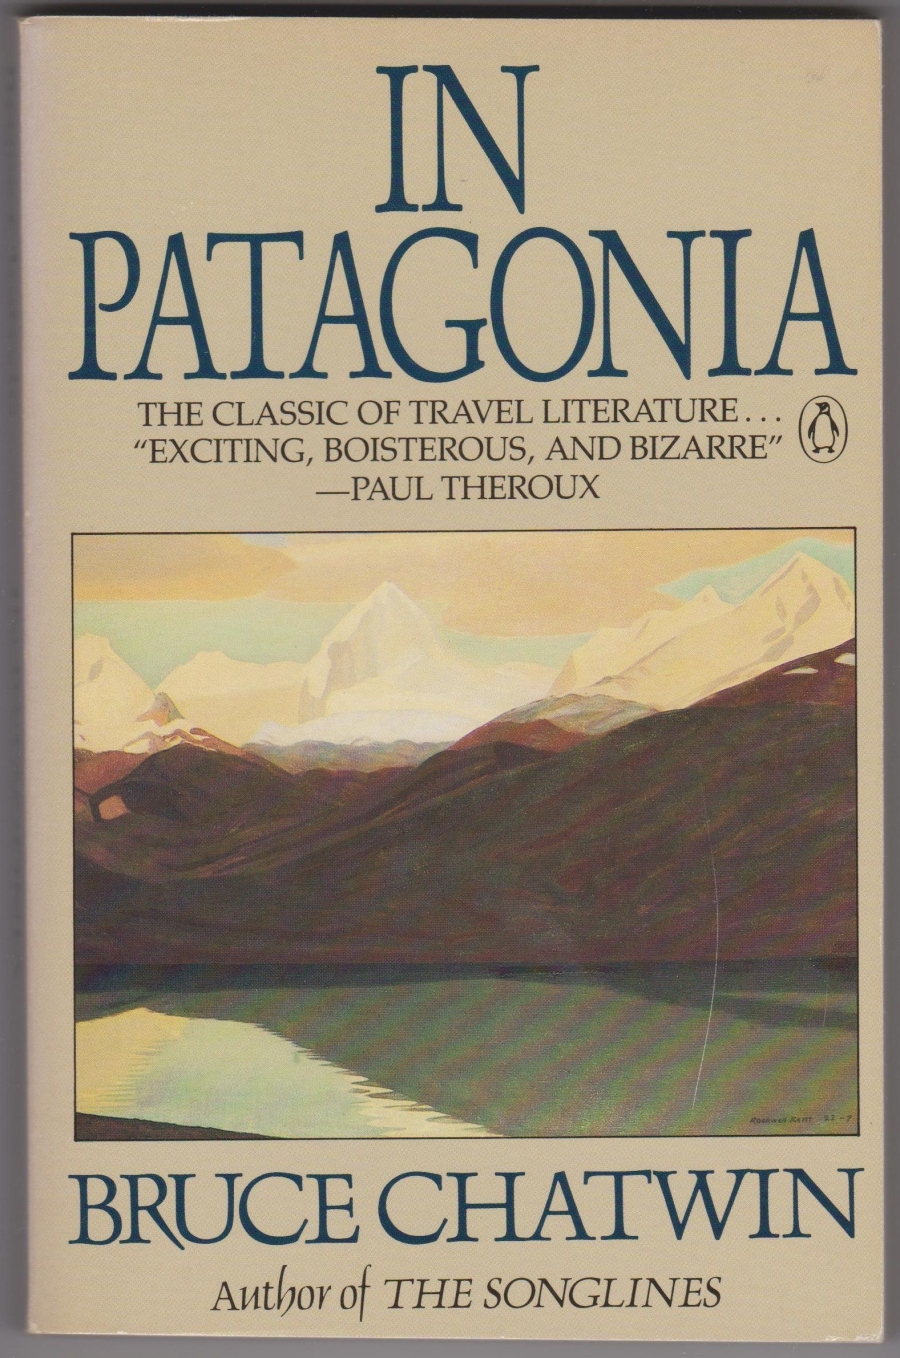 Bìa cuốn sách In Patagonia, bản năm 1988